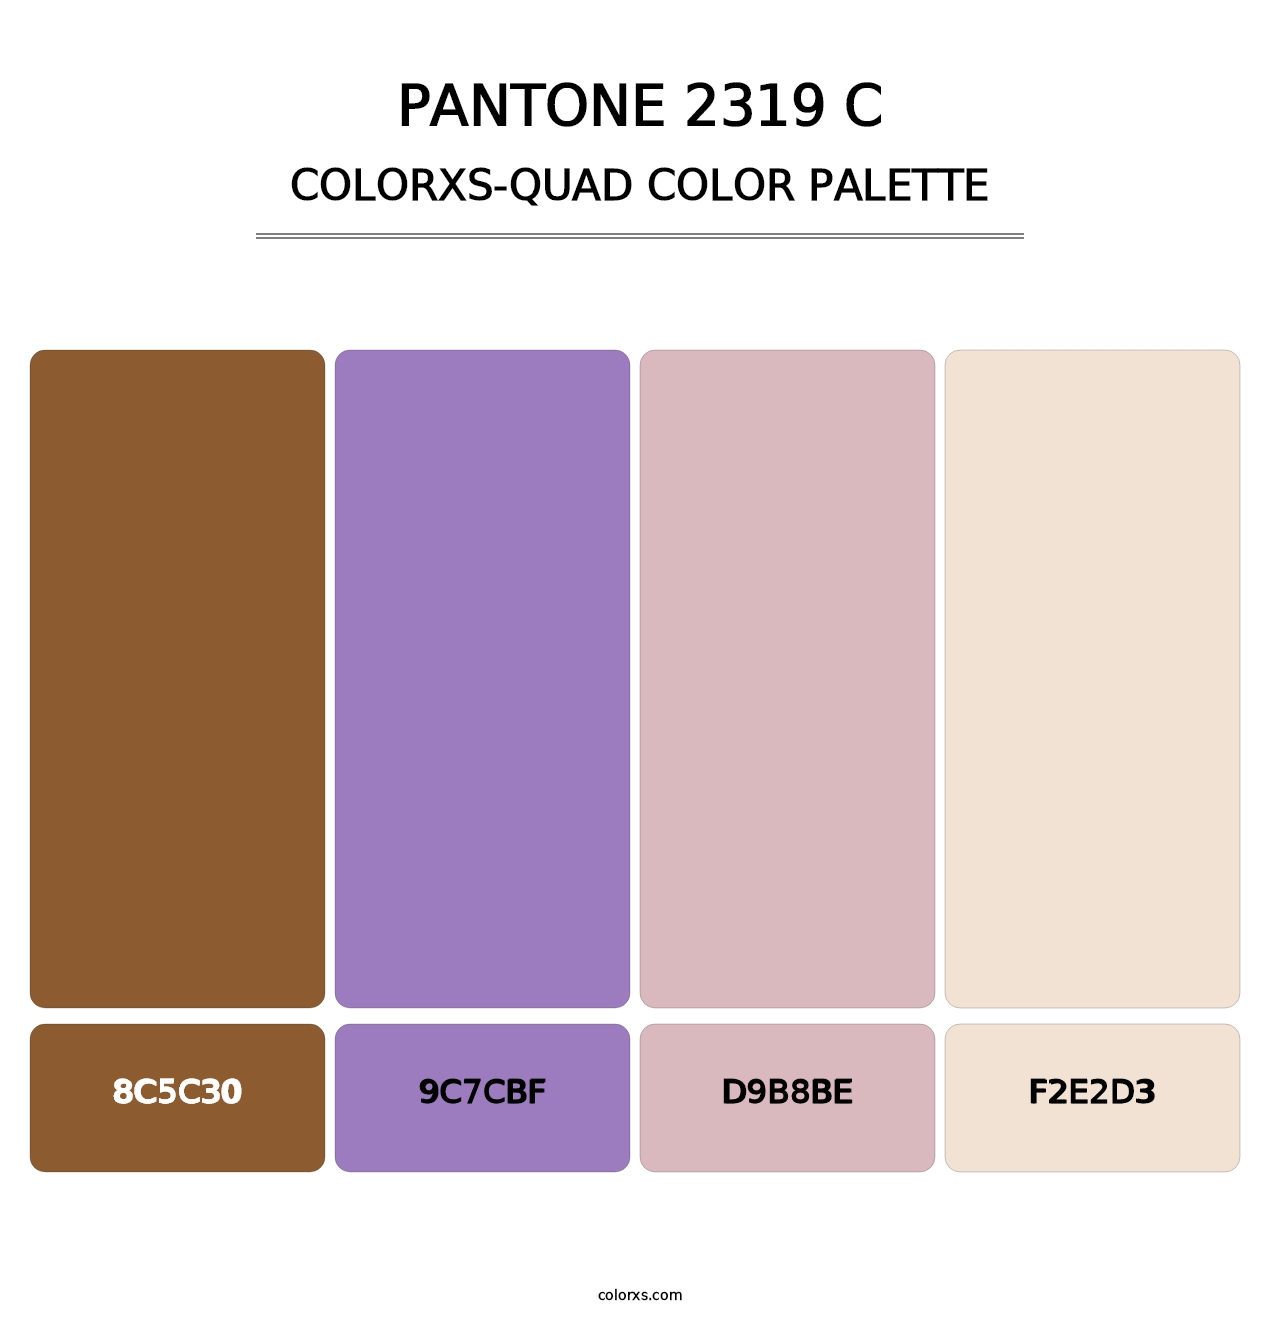 PANTONE 2319 C - Colorxs Quad Palette